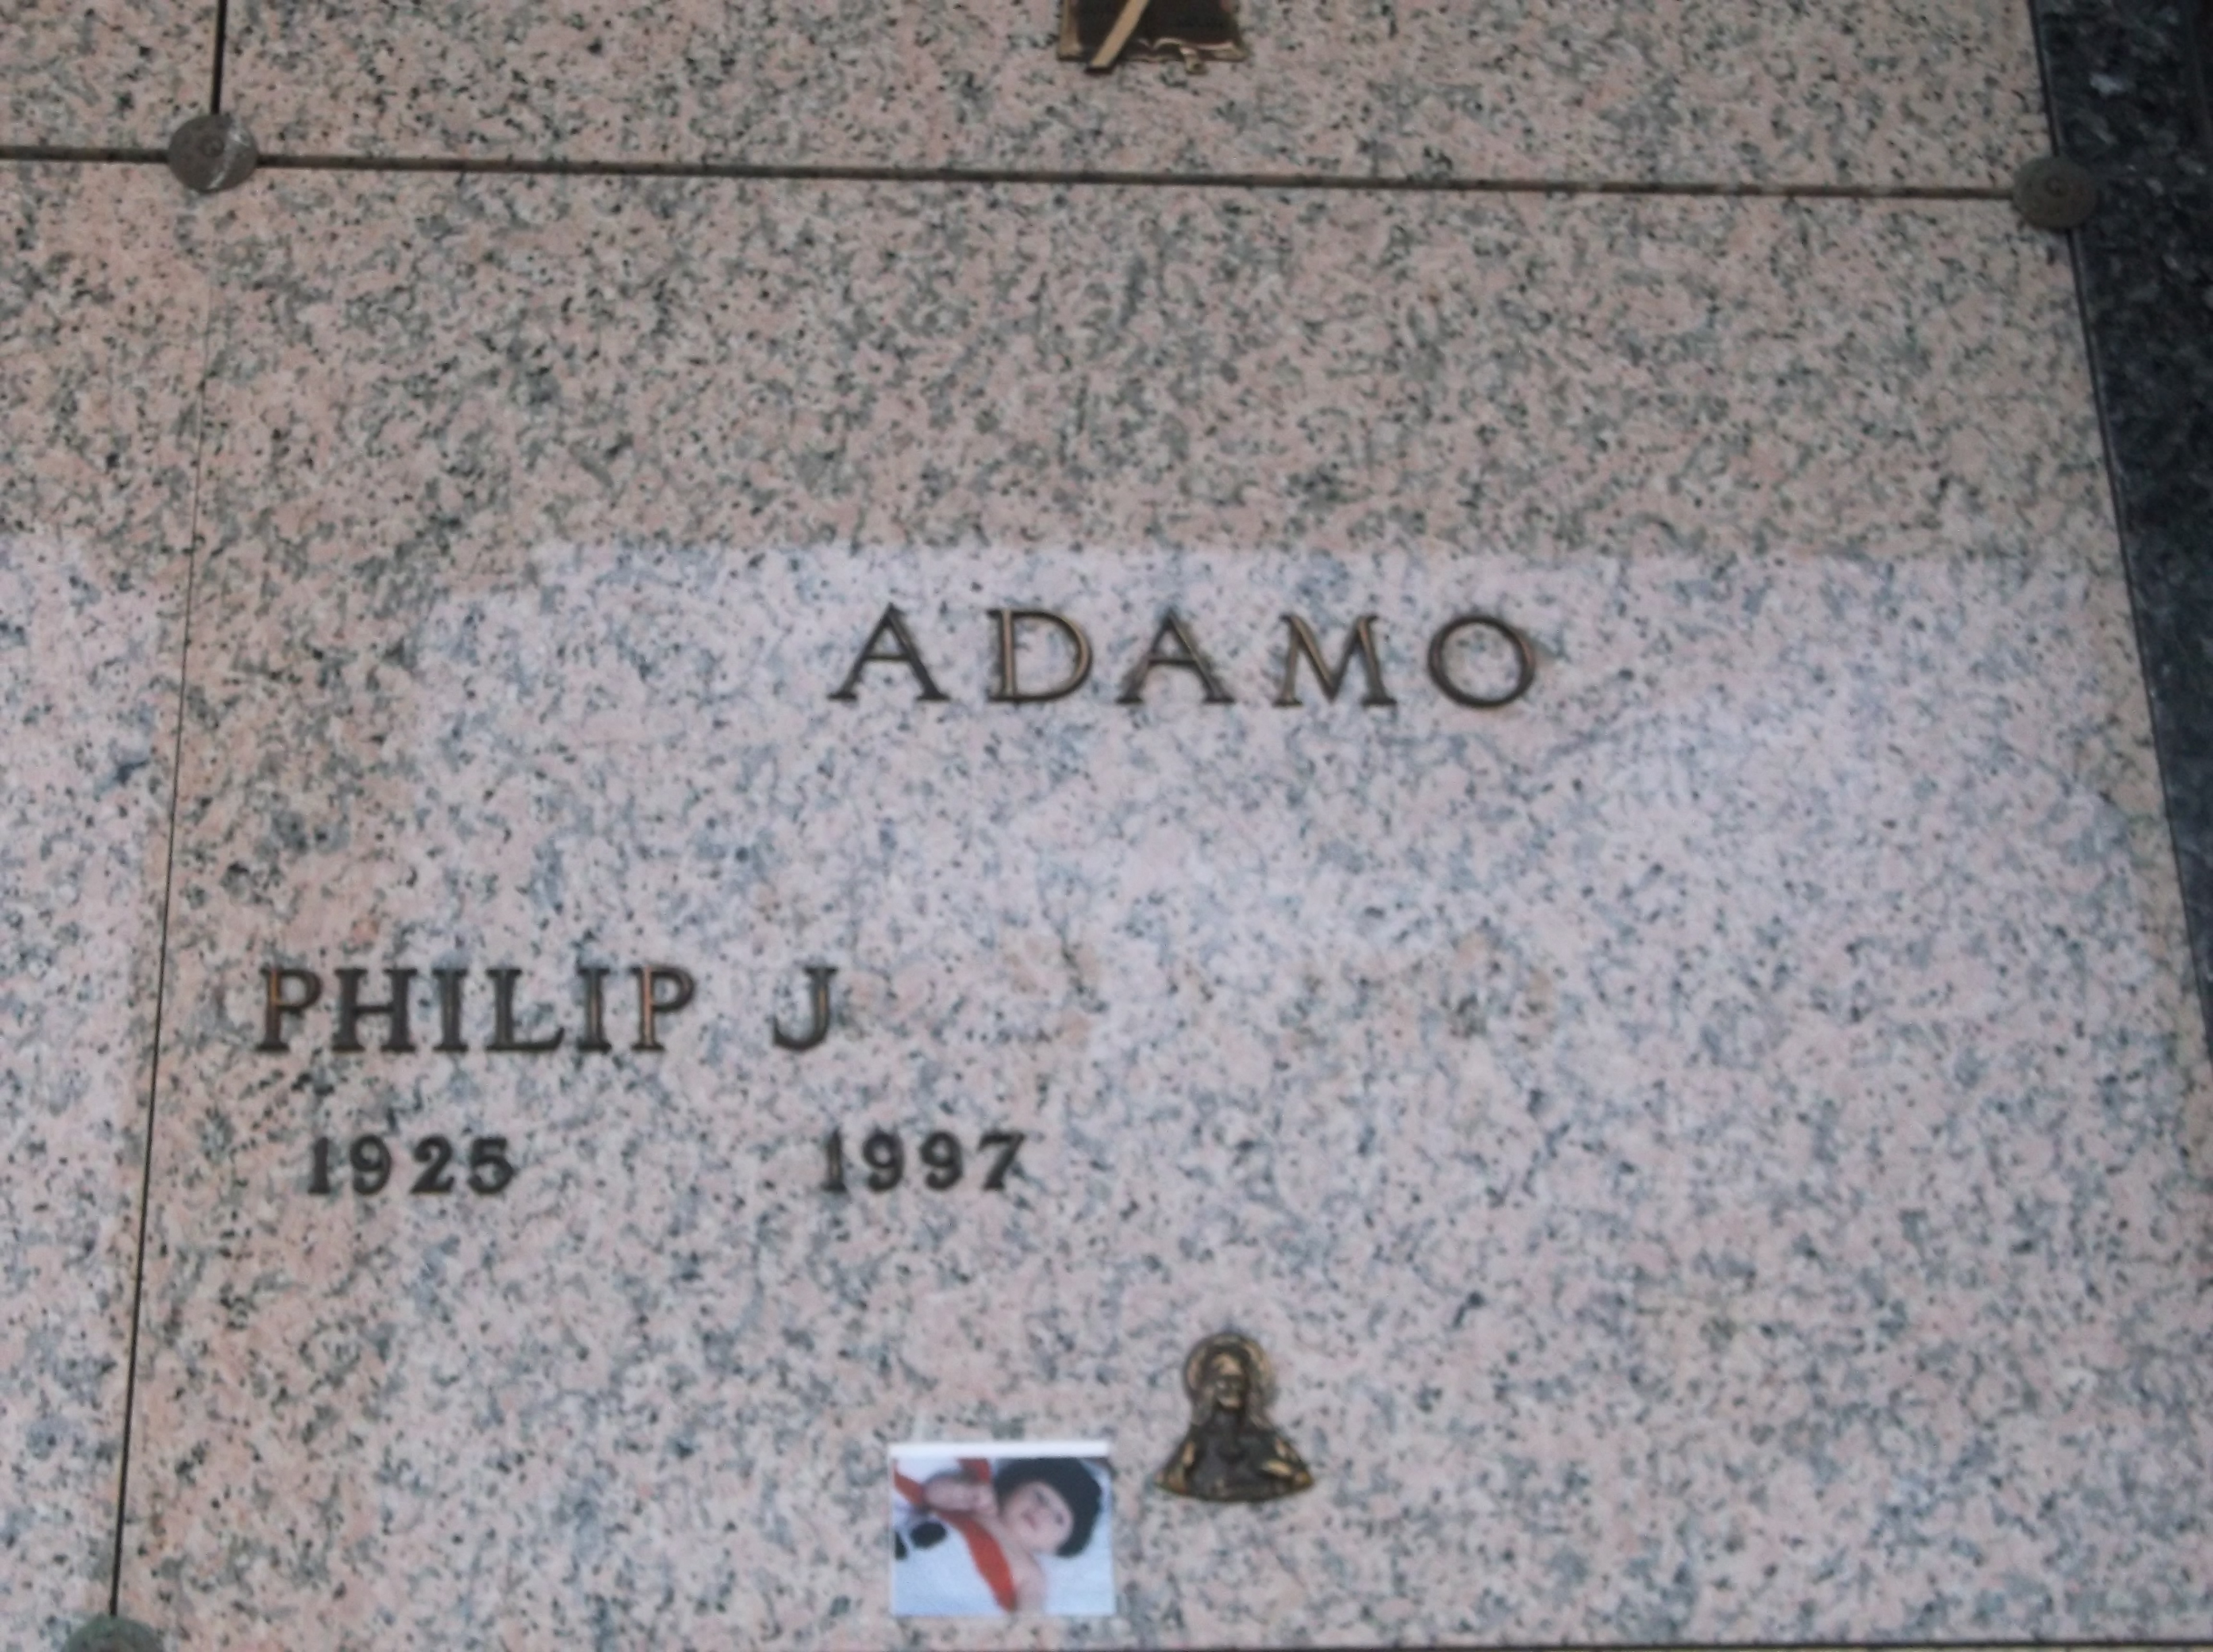 Philip J Adamo